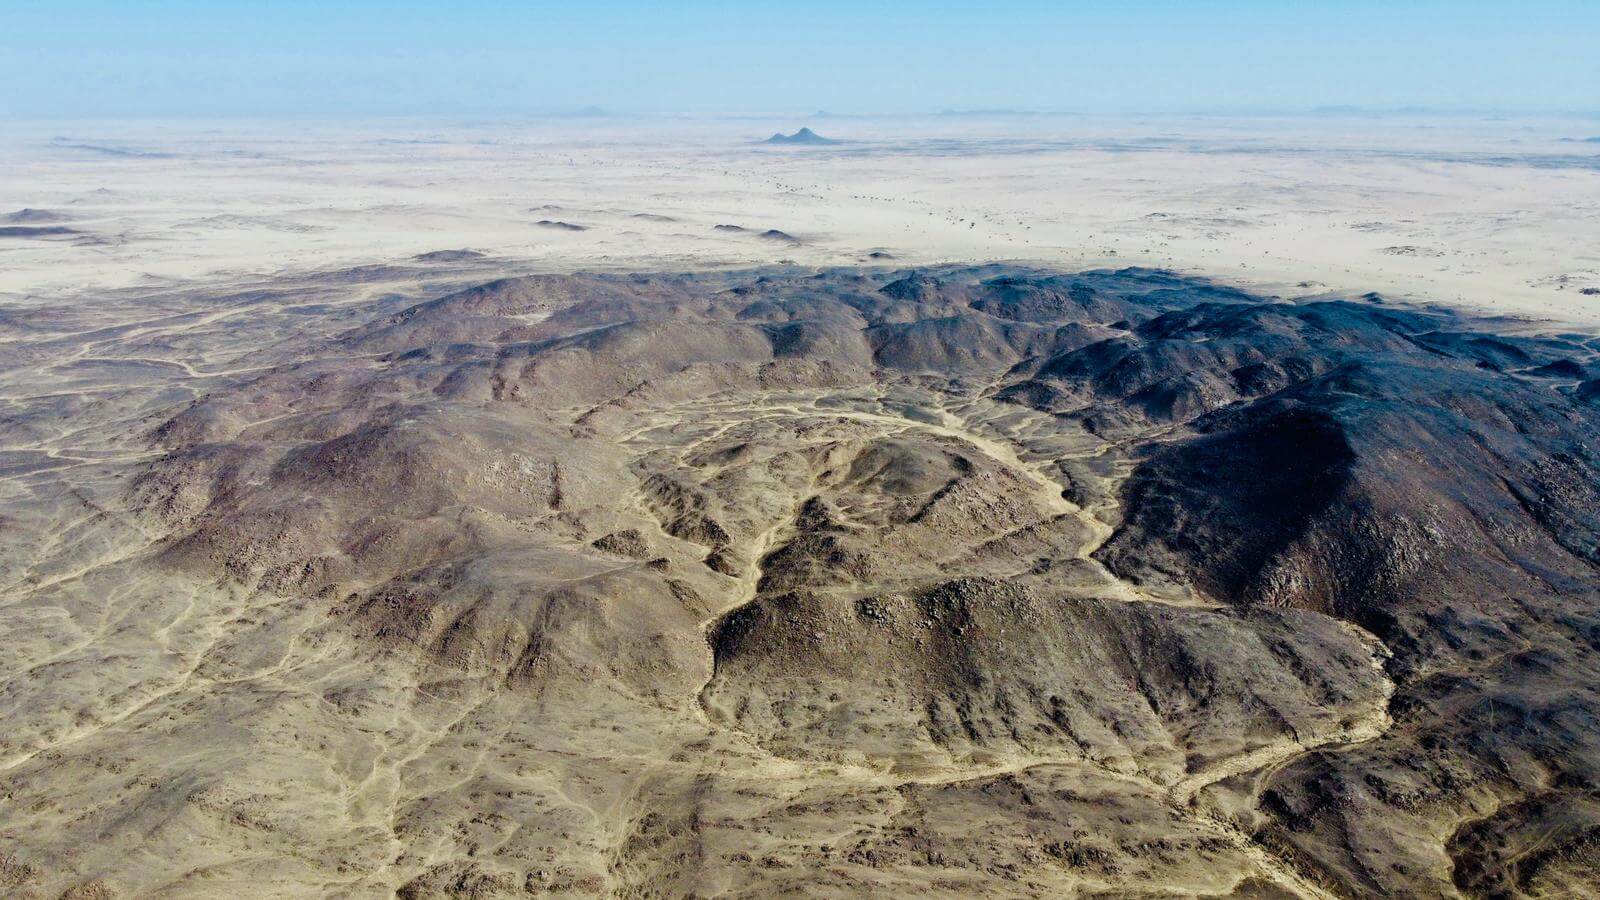 Zdjęcie z perspektywy ptasiej przedstawia krater powulkaniczny na afrykańskiej pustyni.